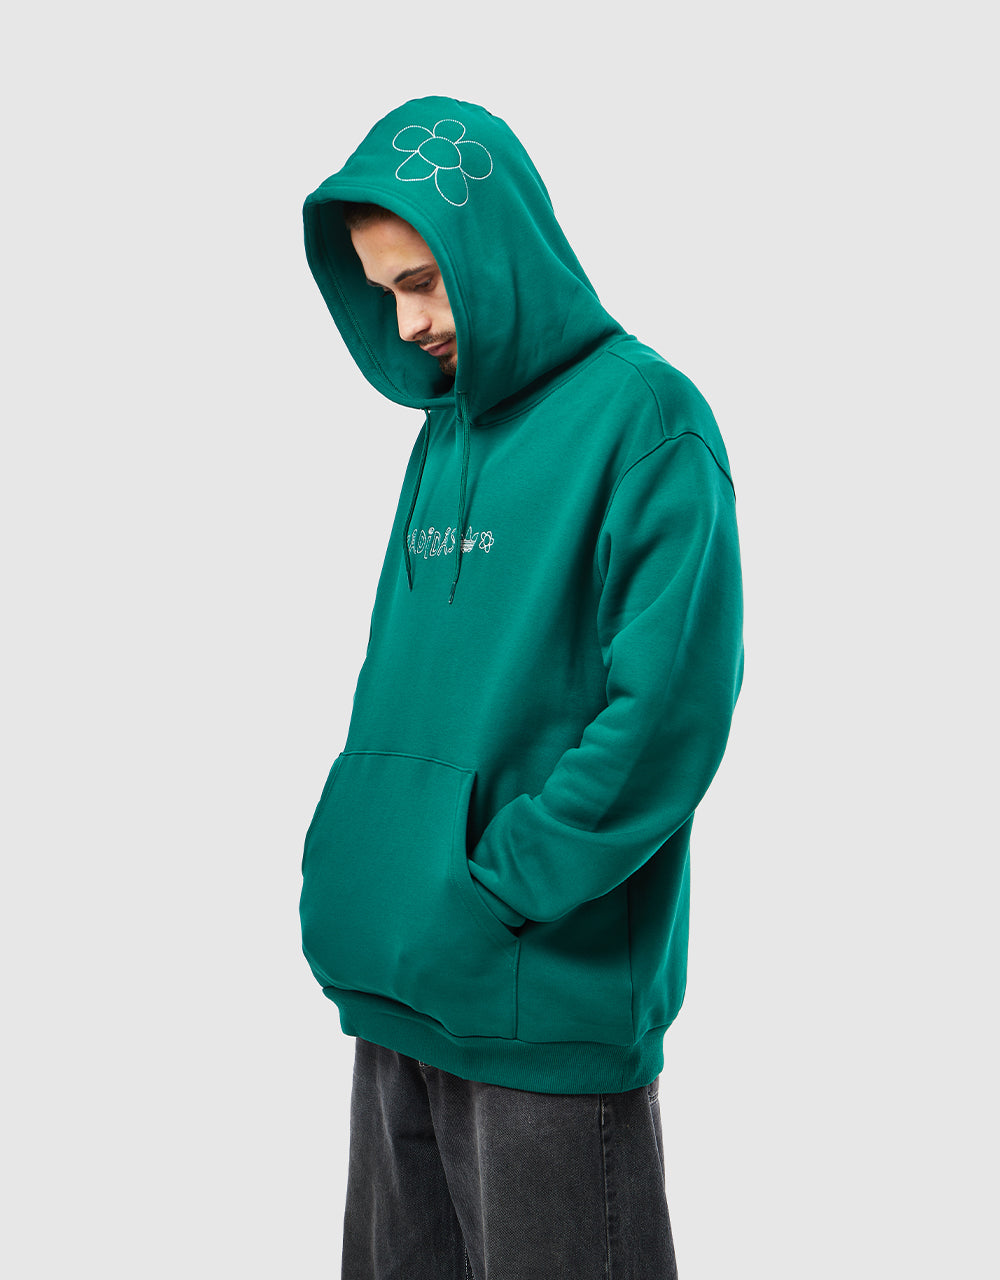 Adidas x Liisa Chisholm Pullover Hoodie - Dark Green